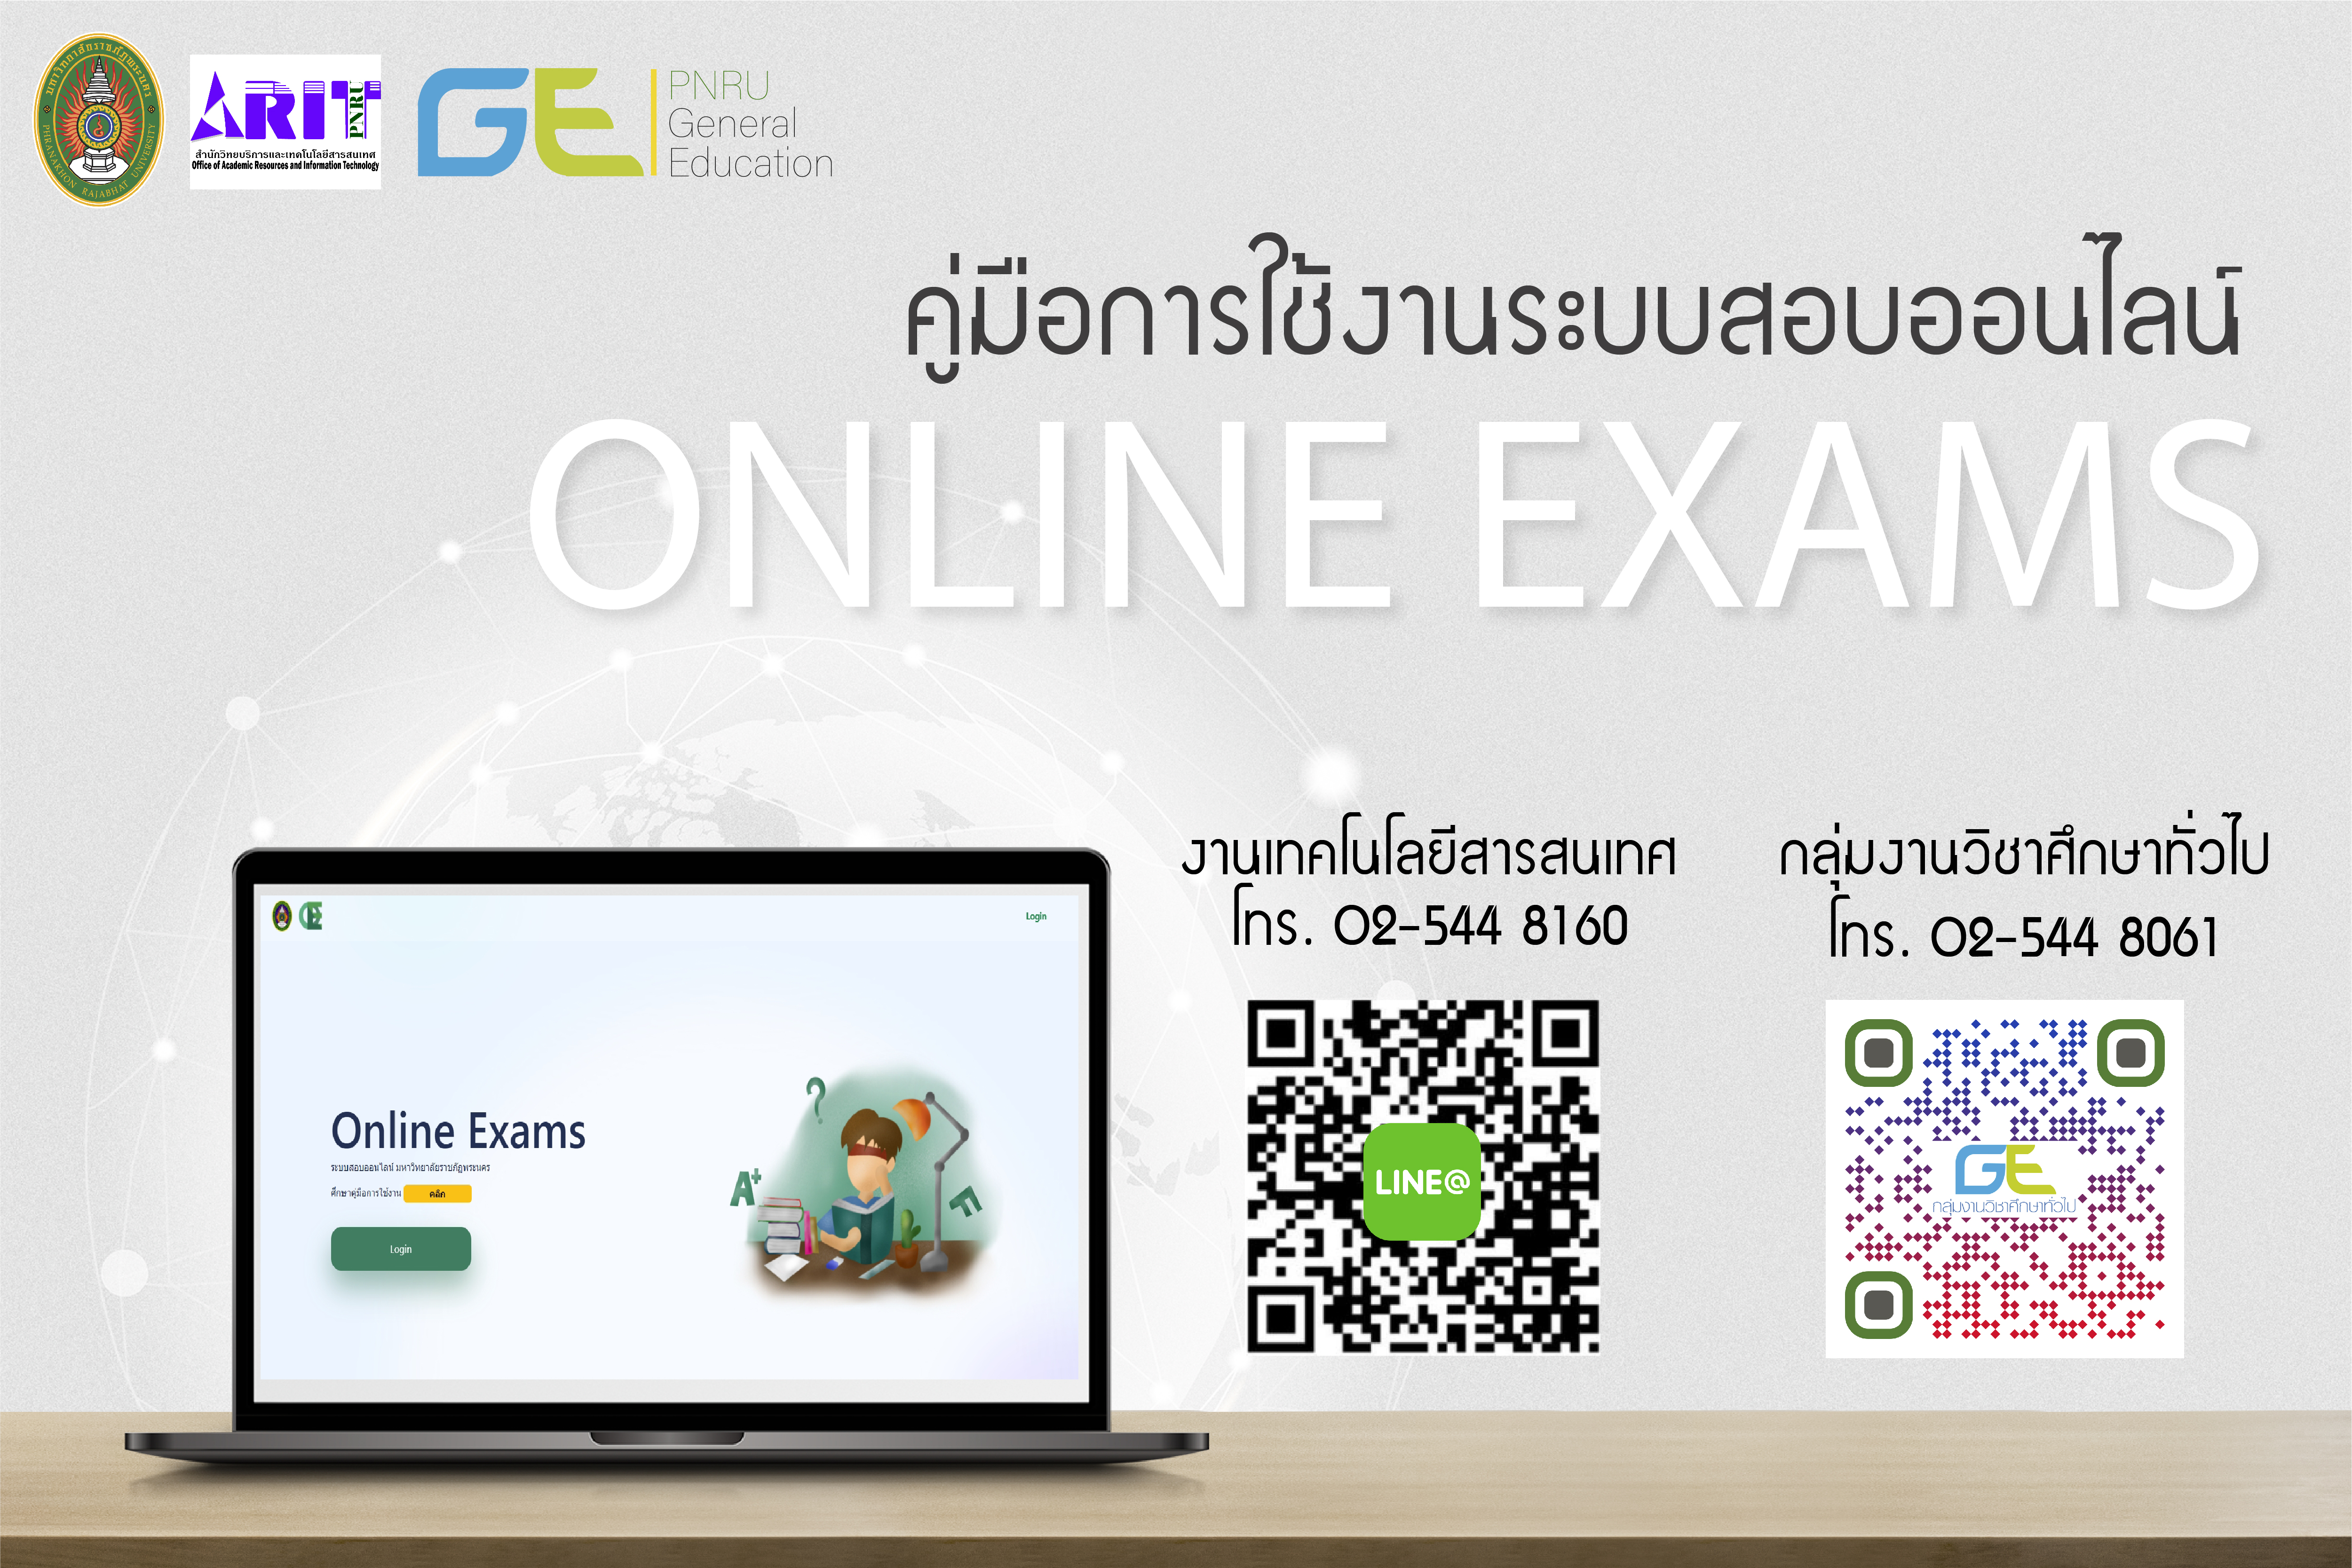 คู่มือการใช้งานระบบสอบออนไลน์ Online Exams ภาคการศึกษาที่ 2 ปีการศึกษา 2564 